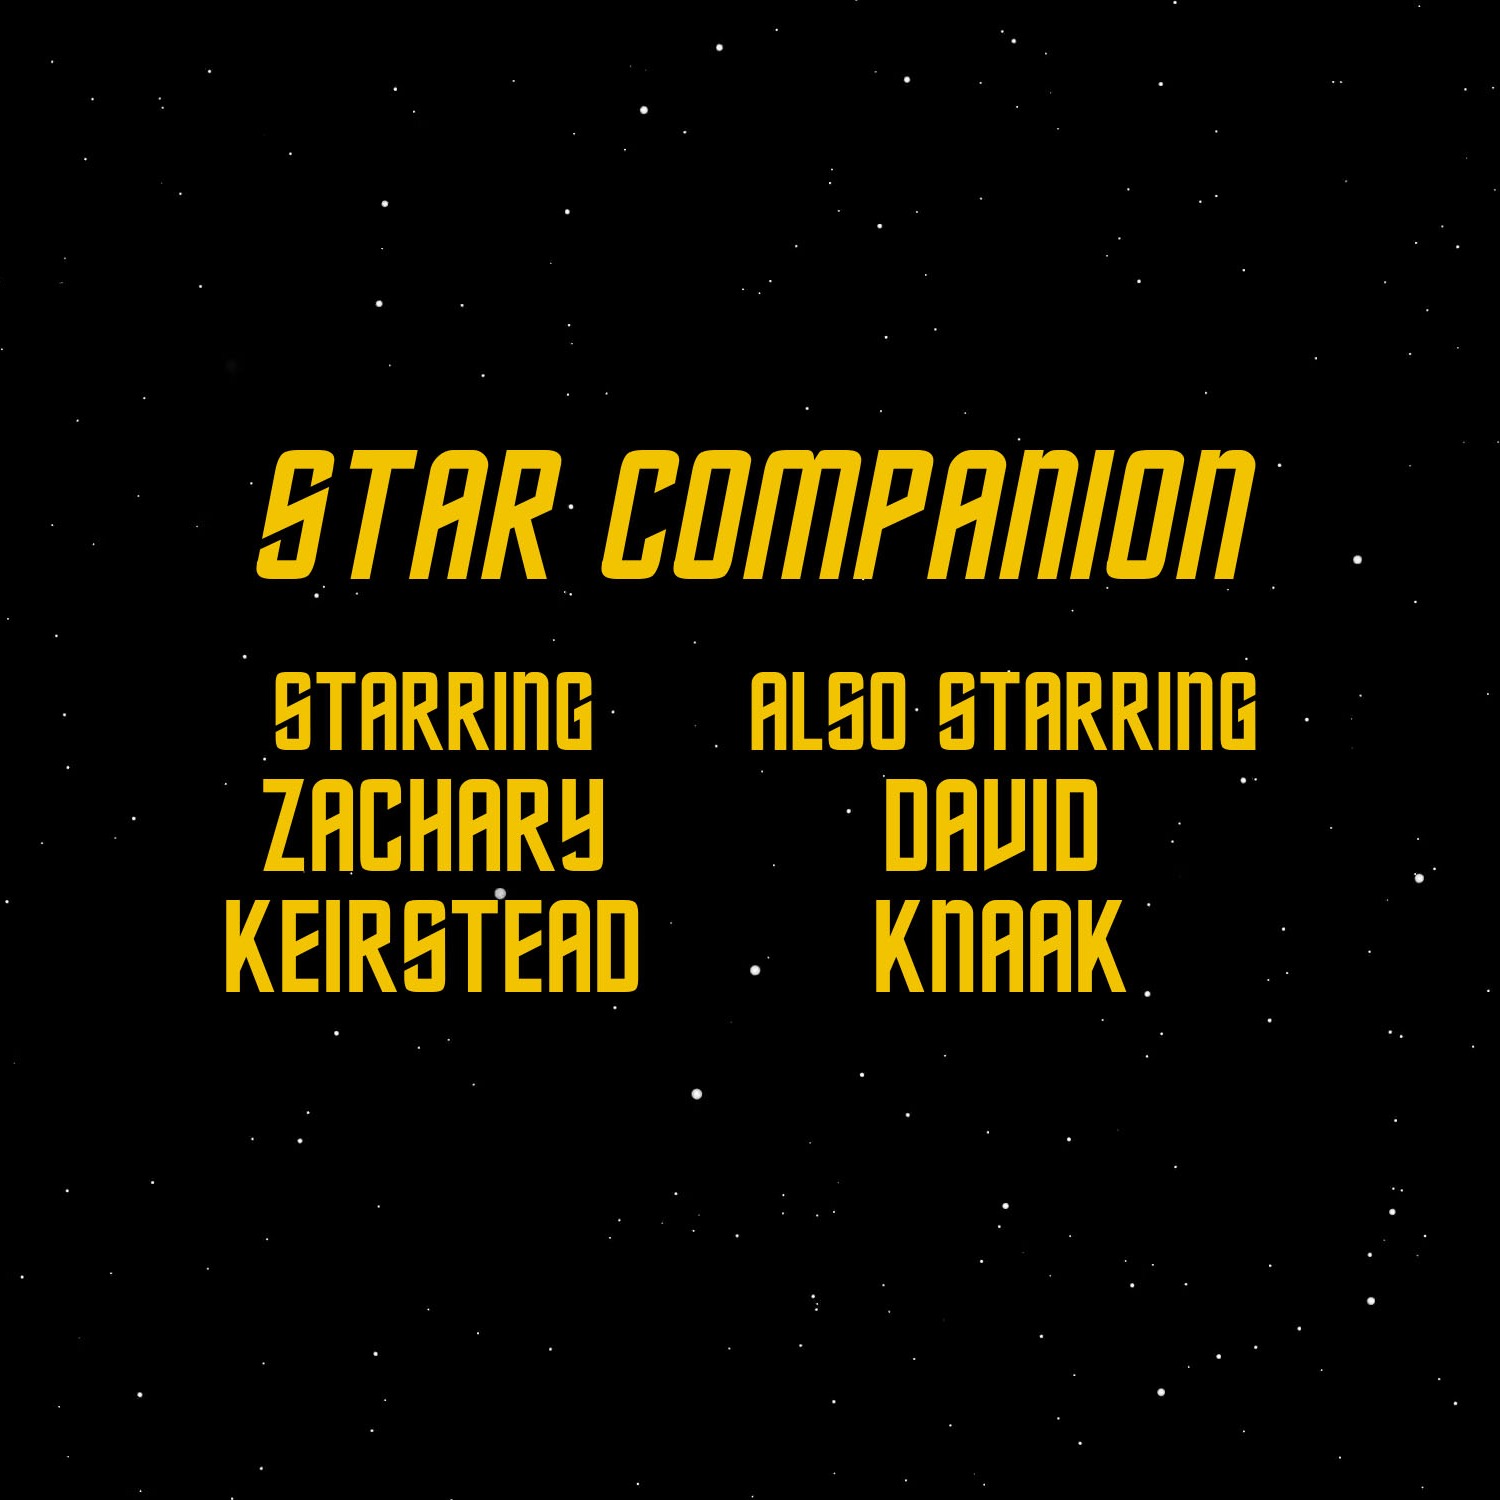 cover art for Star Trek Enterprise: S2 Episode 24 "First Flight"